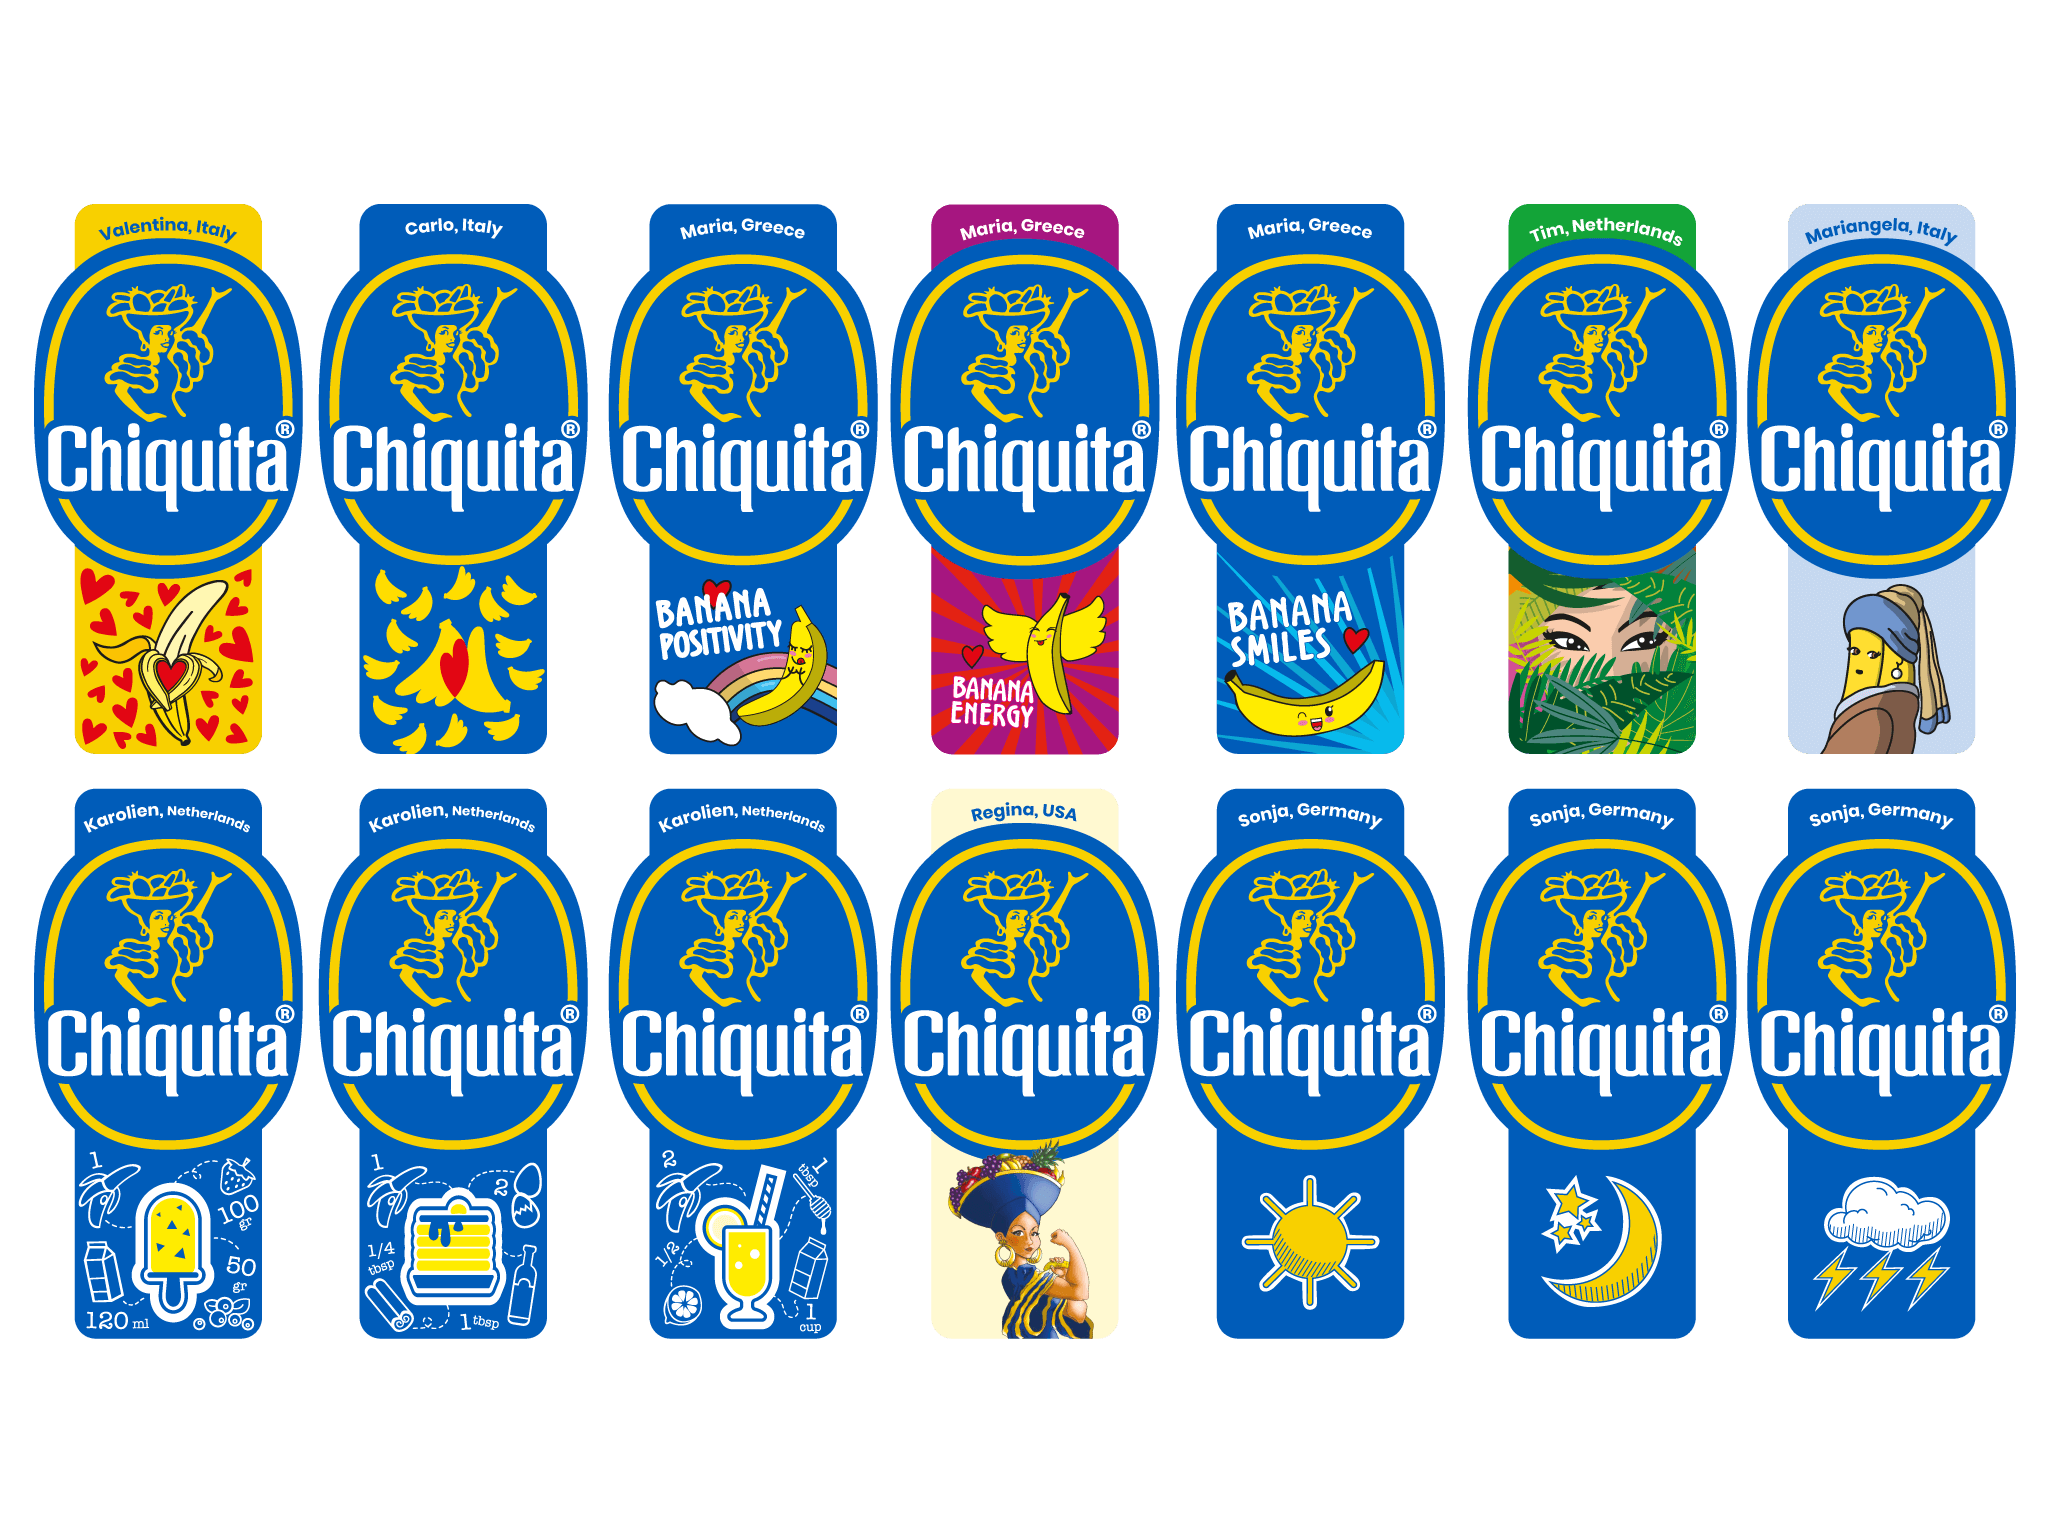 Winnaars van Chiquita 'Fuel the Fun' bekendgemaakt